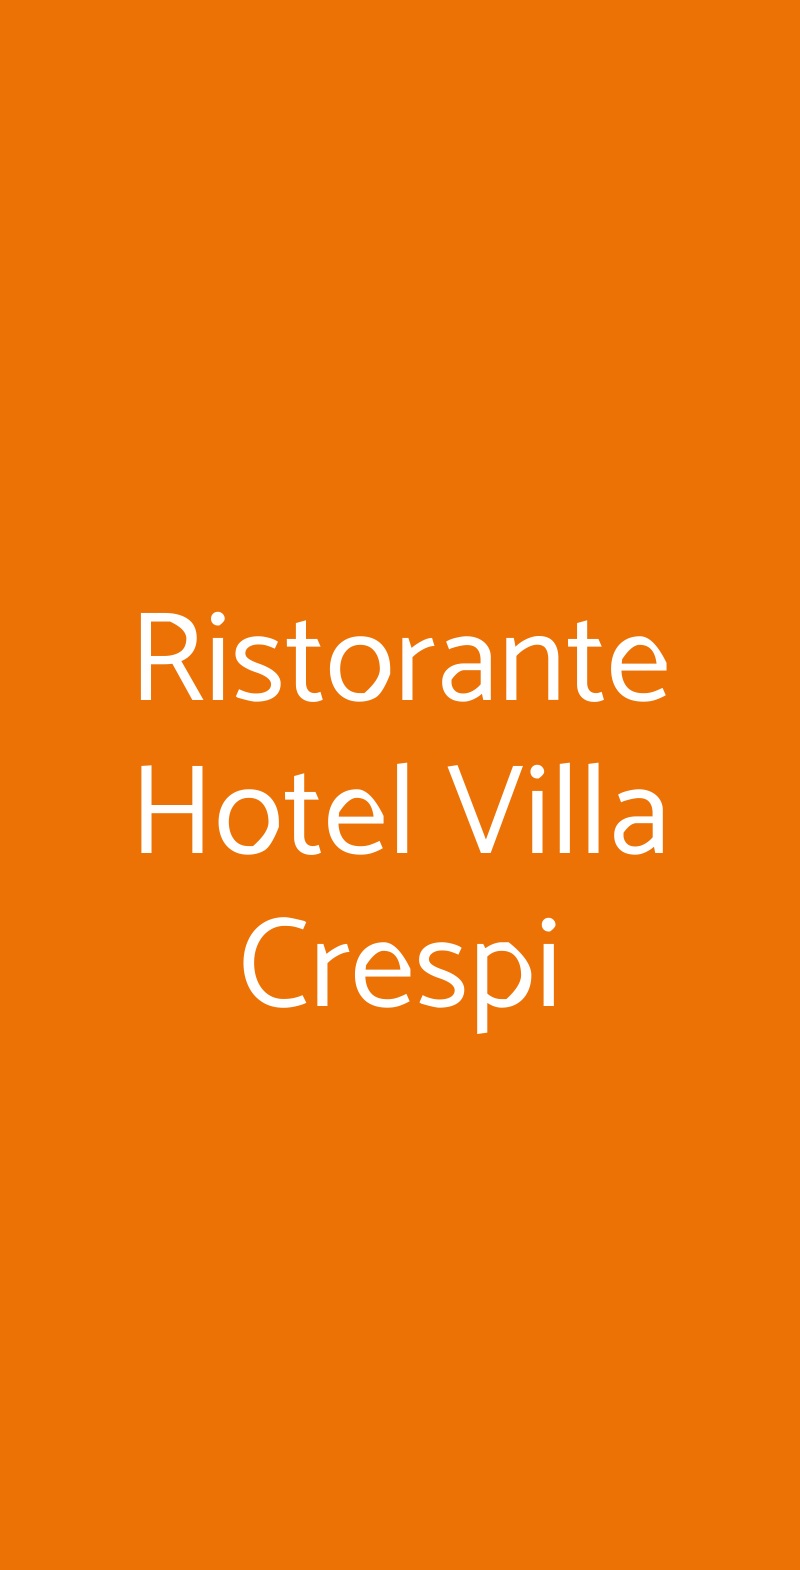 Ristorante Hotel Villa Crespi Orta San Giulio menù 1 pagina